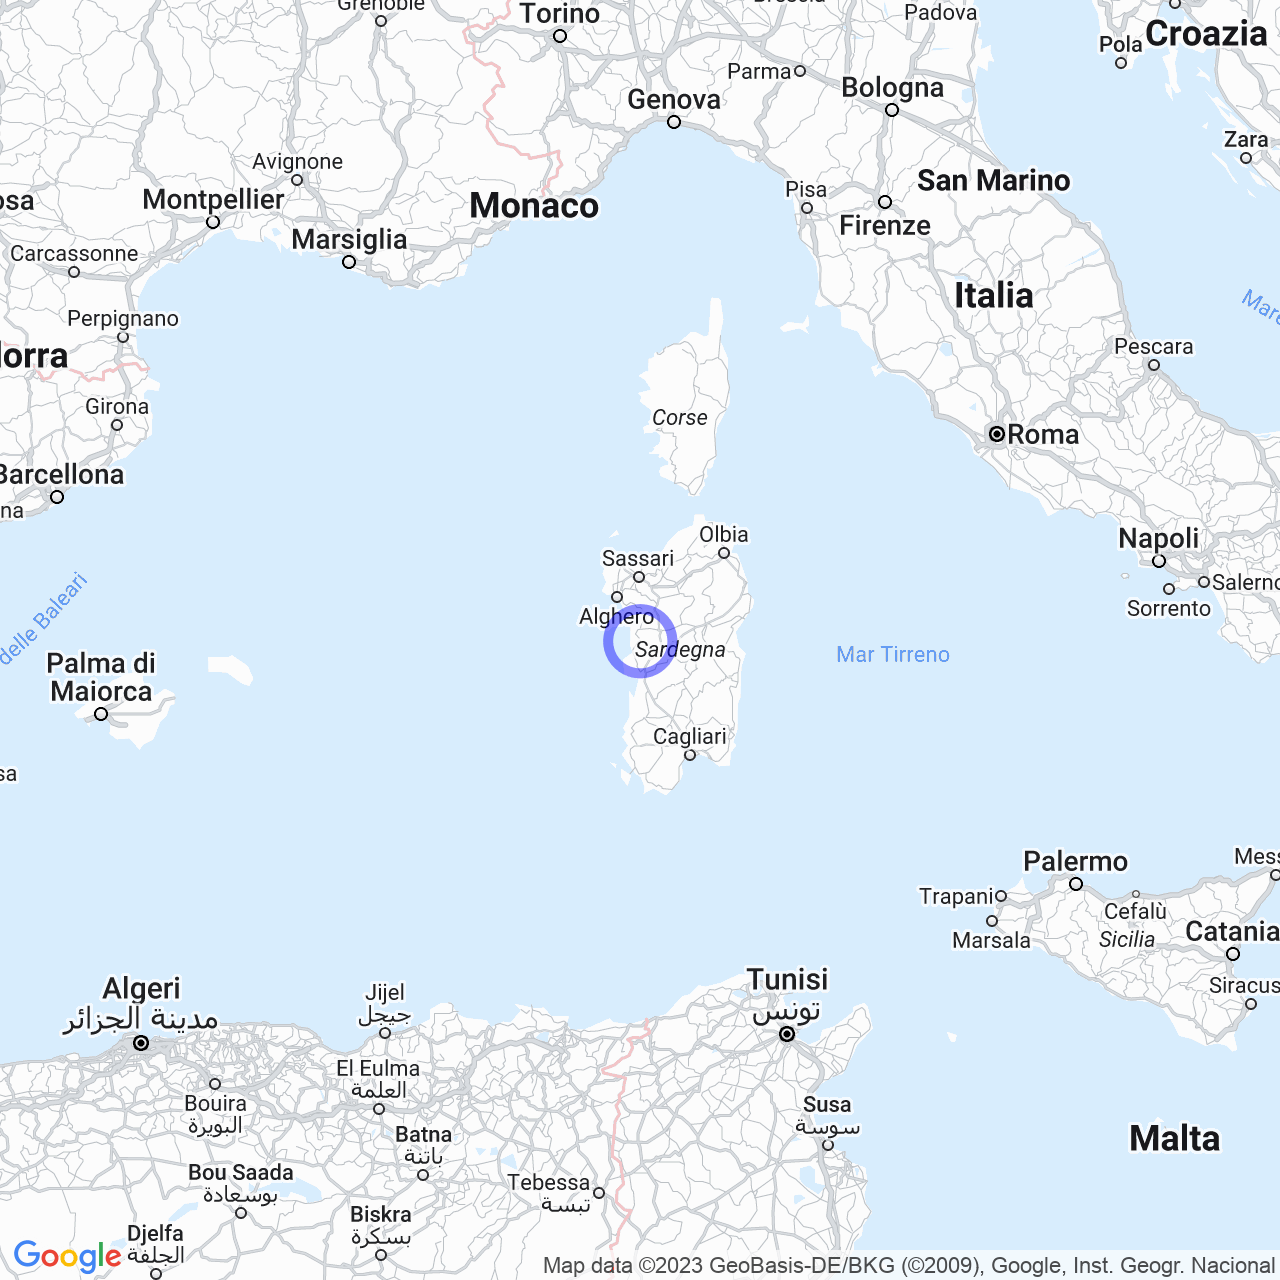 S'Archittu: Fascino di una frazione marina nella costa occidentale della Sardegna